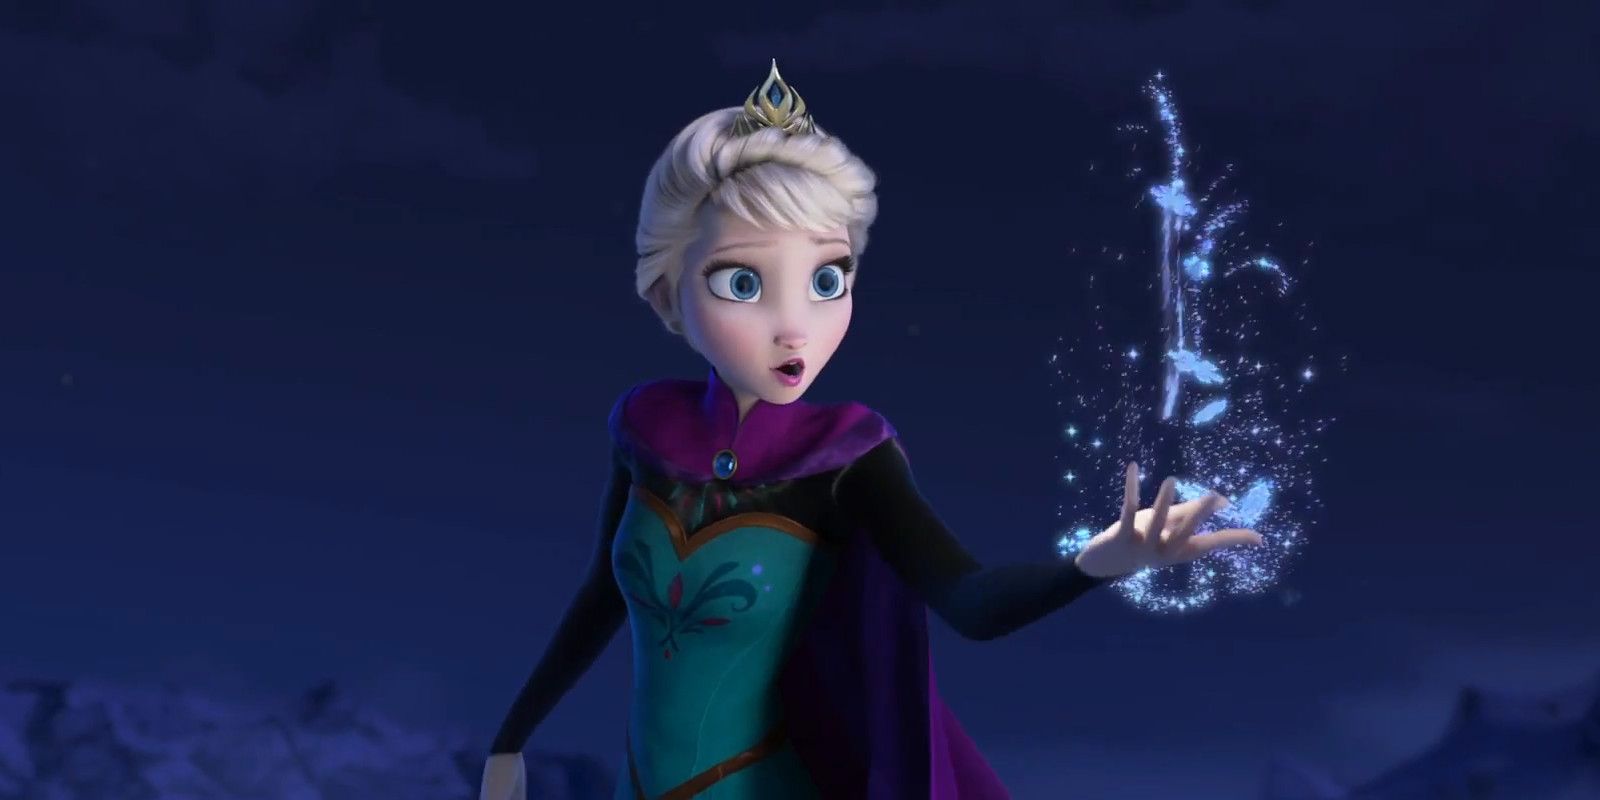 Frozen Producer Explains the Film’s Original Ending